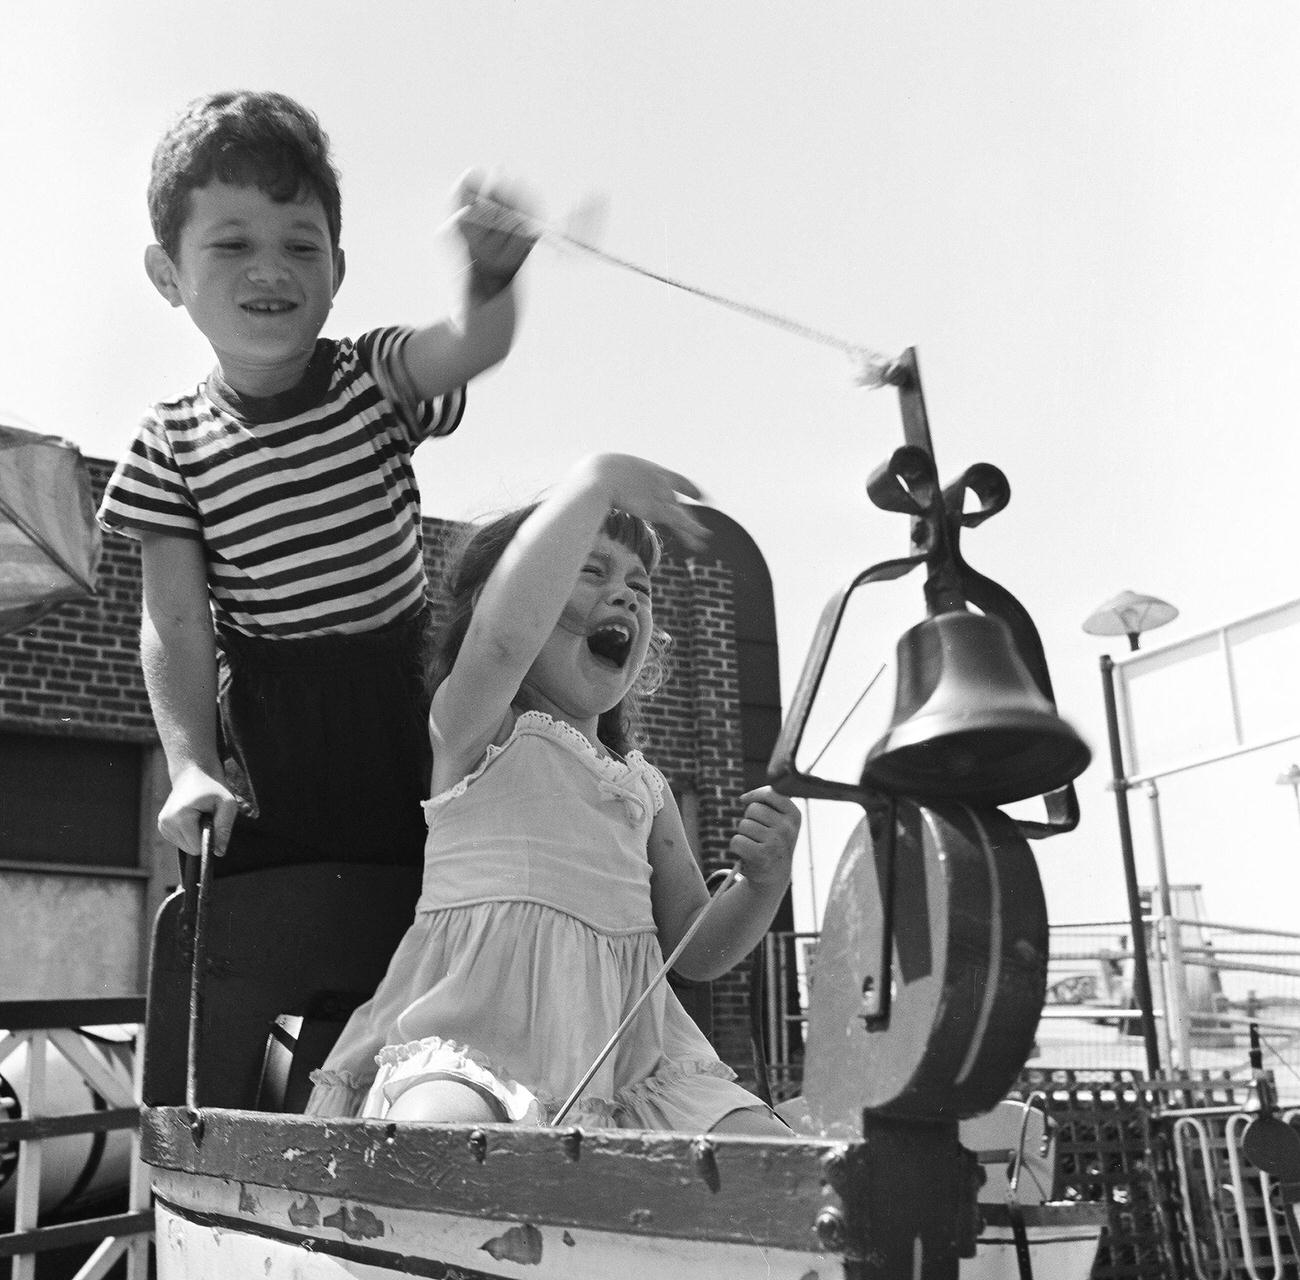 Siblings In Uss Ohio Ride At Amusement Park, 1948